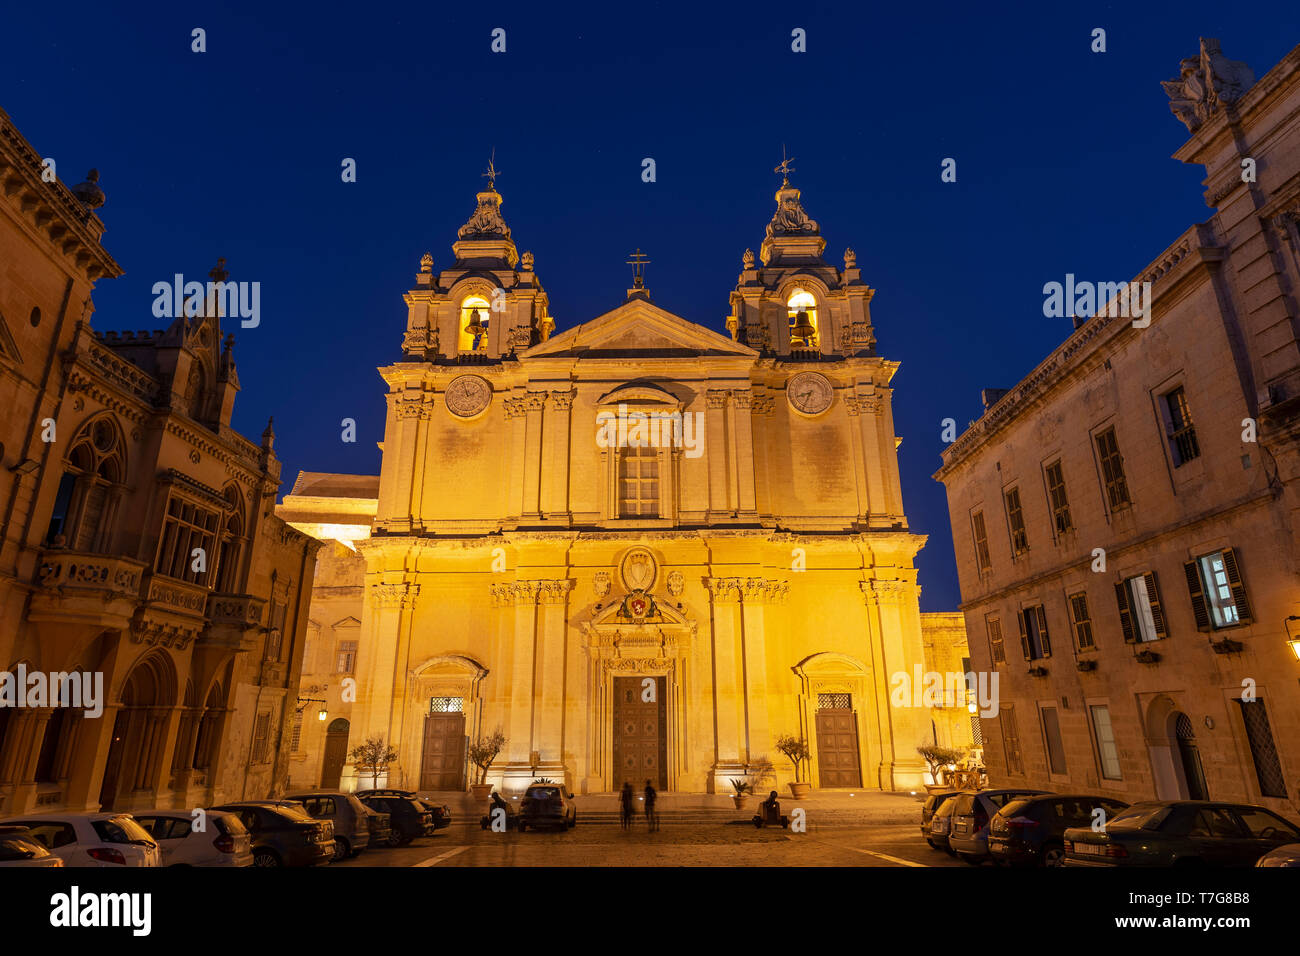 Malta, Malta, Mdina (Rabat) Old Walled Town, St. Paul's Cahtedral Stock Photo